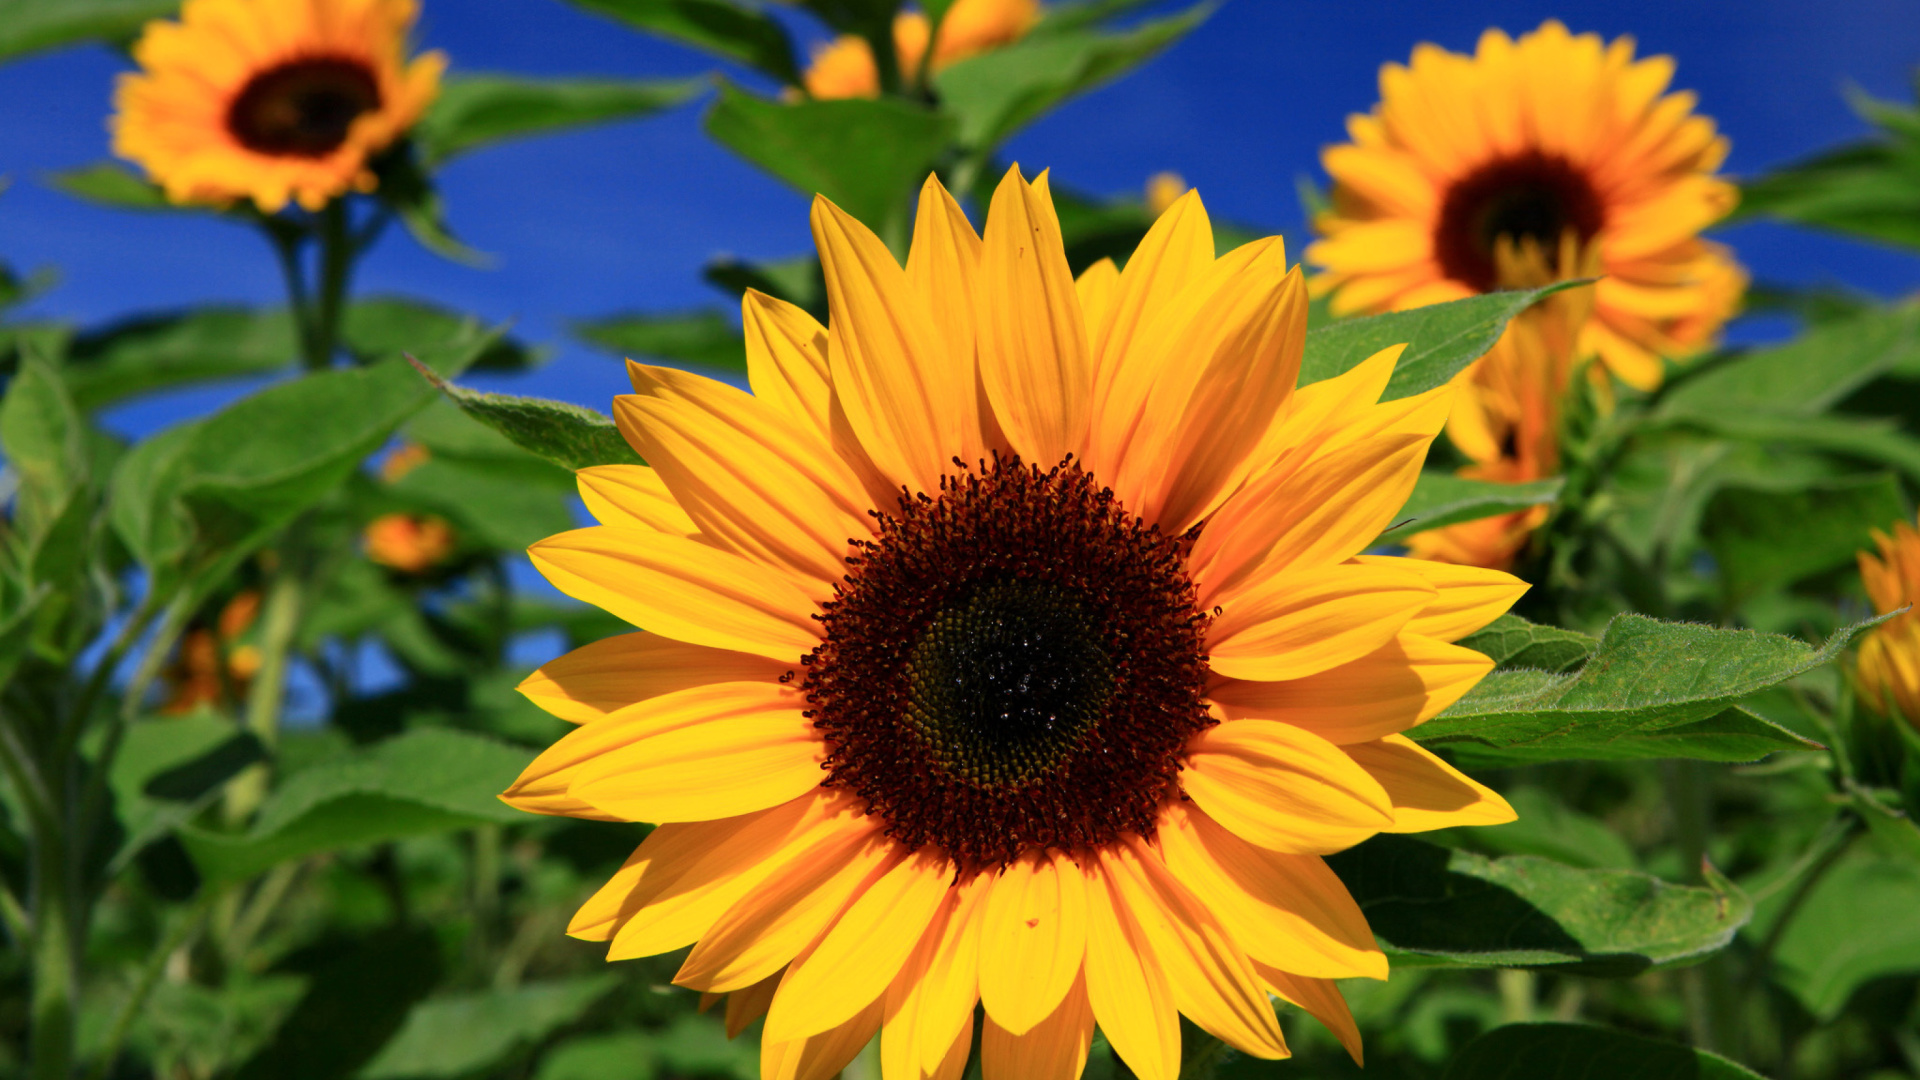 Sunflower close-up screenshot #1 1920x1080